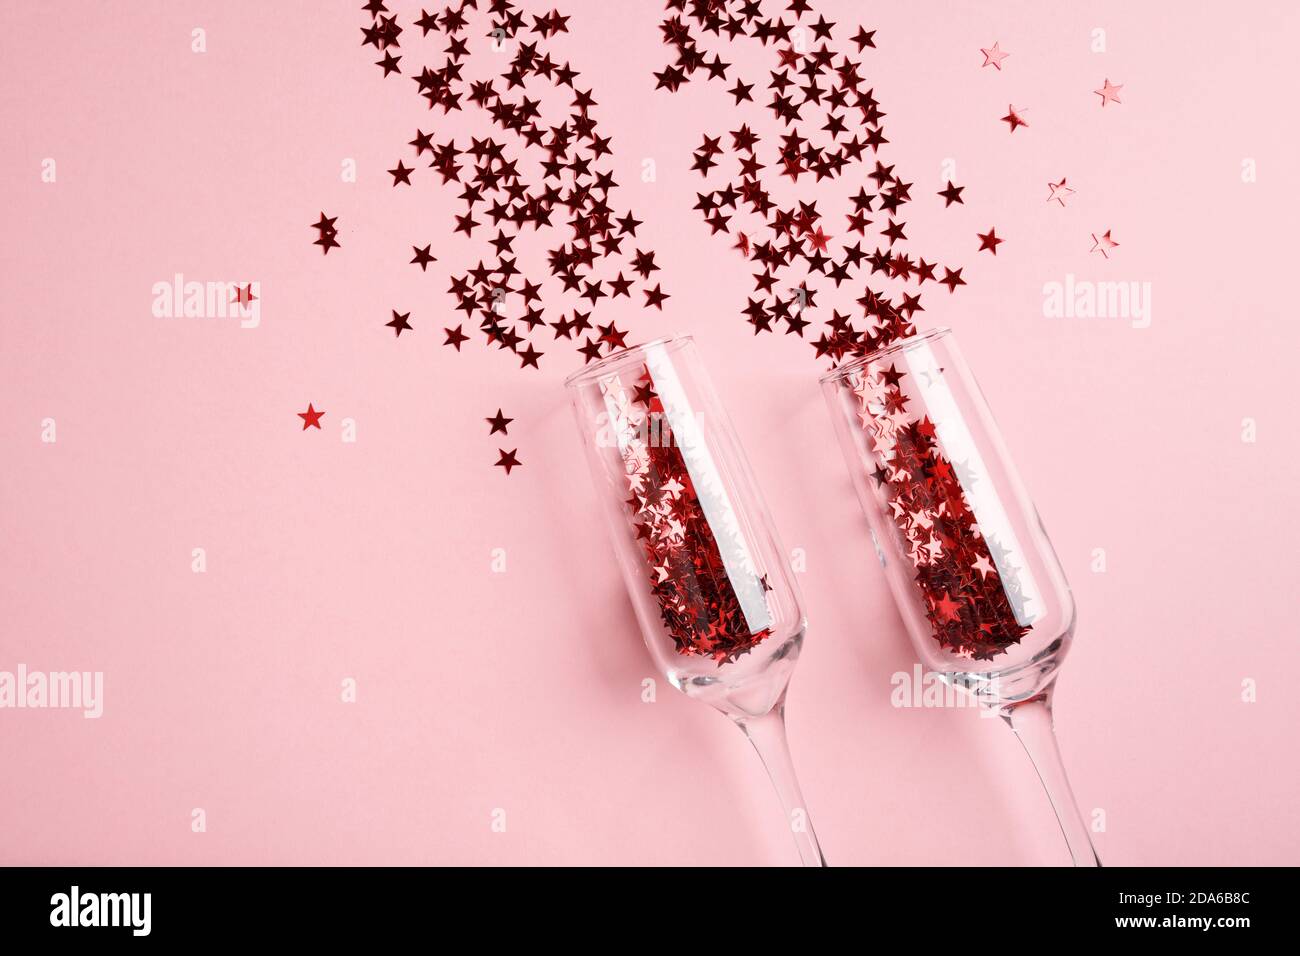 Coupe de champagne avec confetti rouges sur fond rose. Banque D'Images